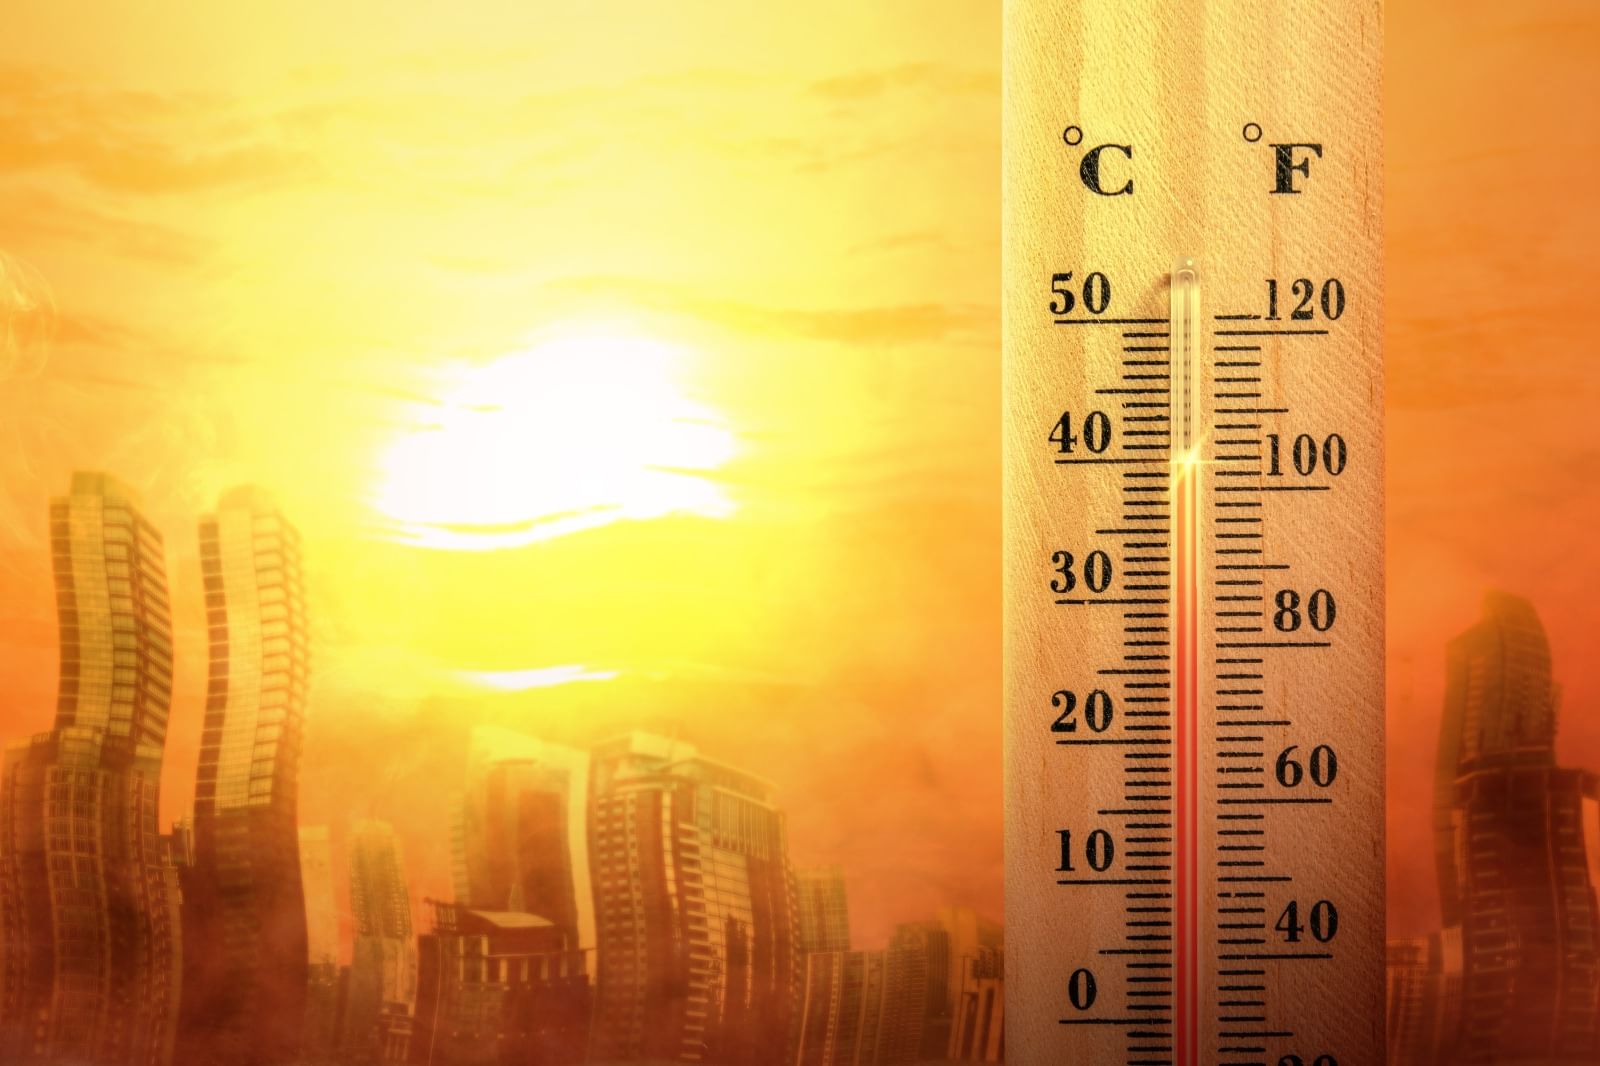 الأرصاد الجوية تحذر من ارتفاع عالمي غير مسبوق في درجات حرارة الأرض